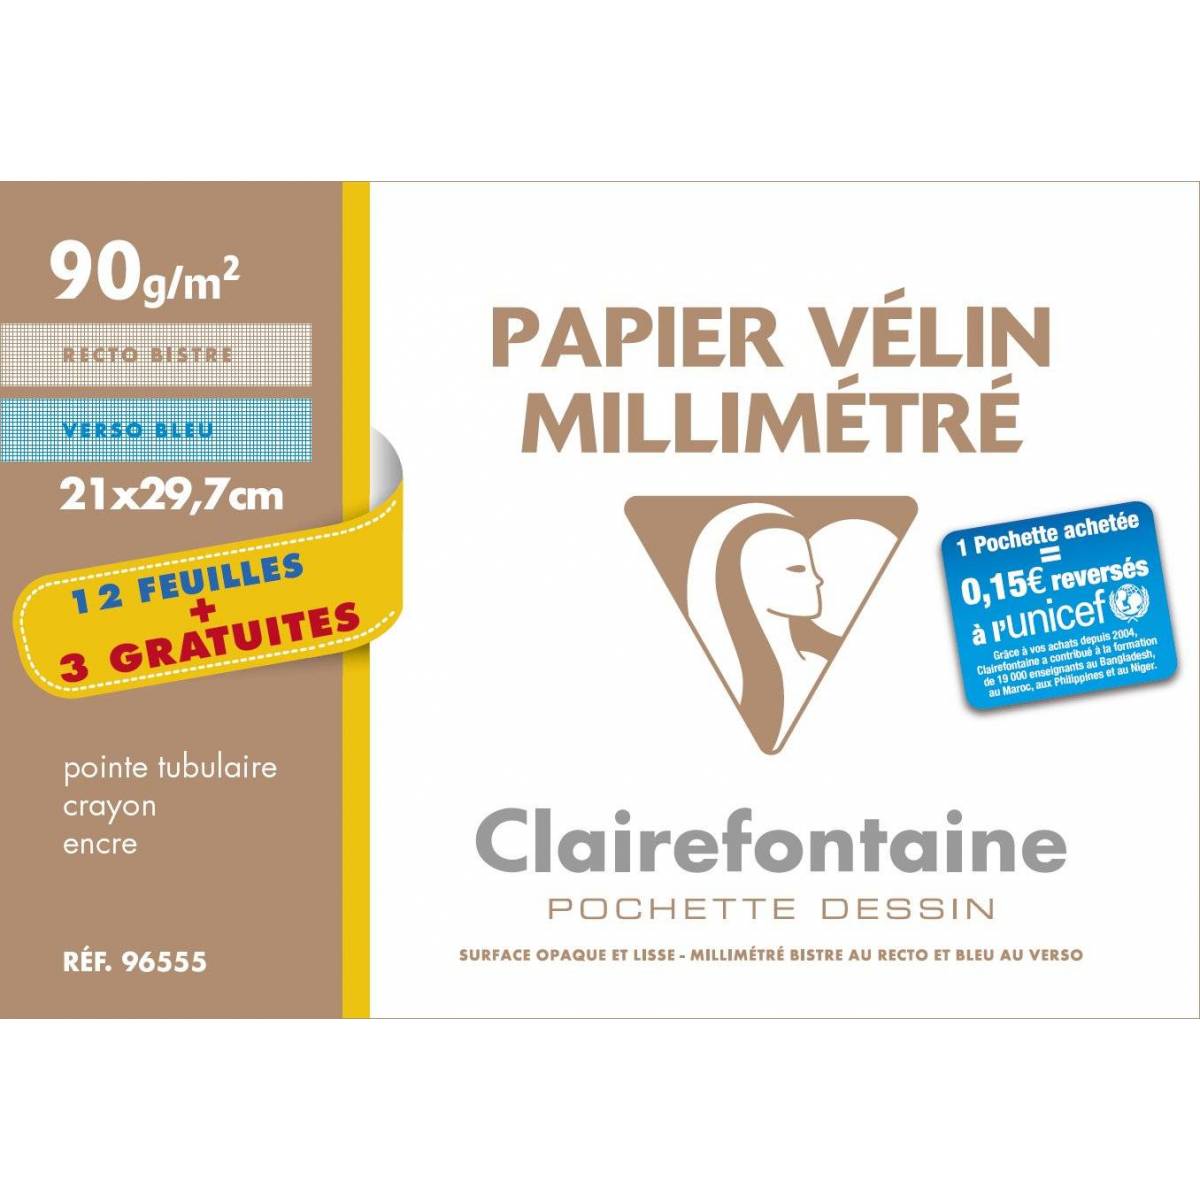 12 Feuilles Papier Vélin Millimétré Clairefontaine + 3 Gratuites